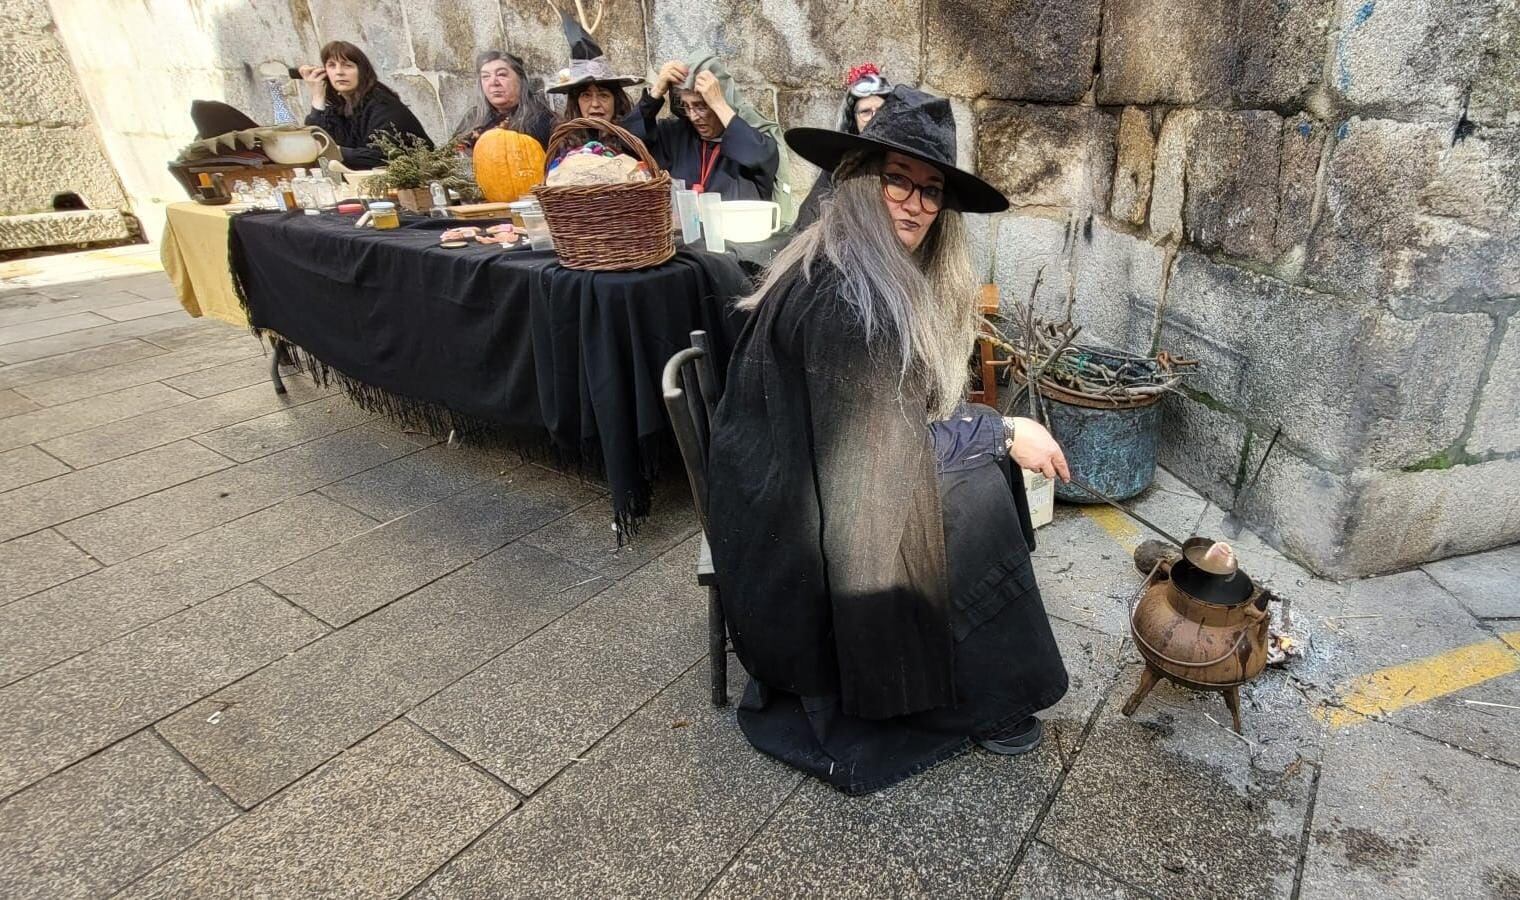 Mujeres disfrazadas de brujas en Xinzo de Limia, en Ourense, durante la jornada electoral.